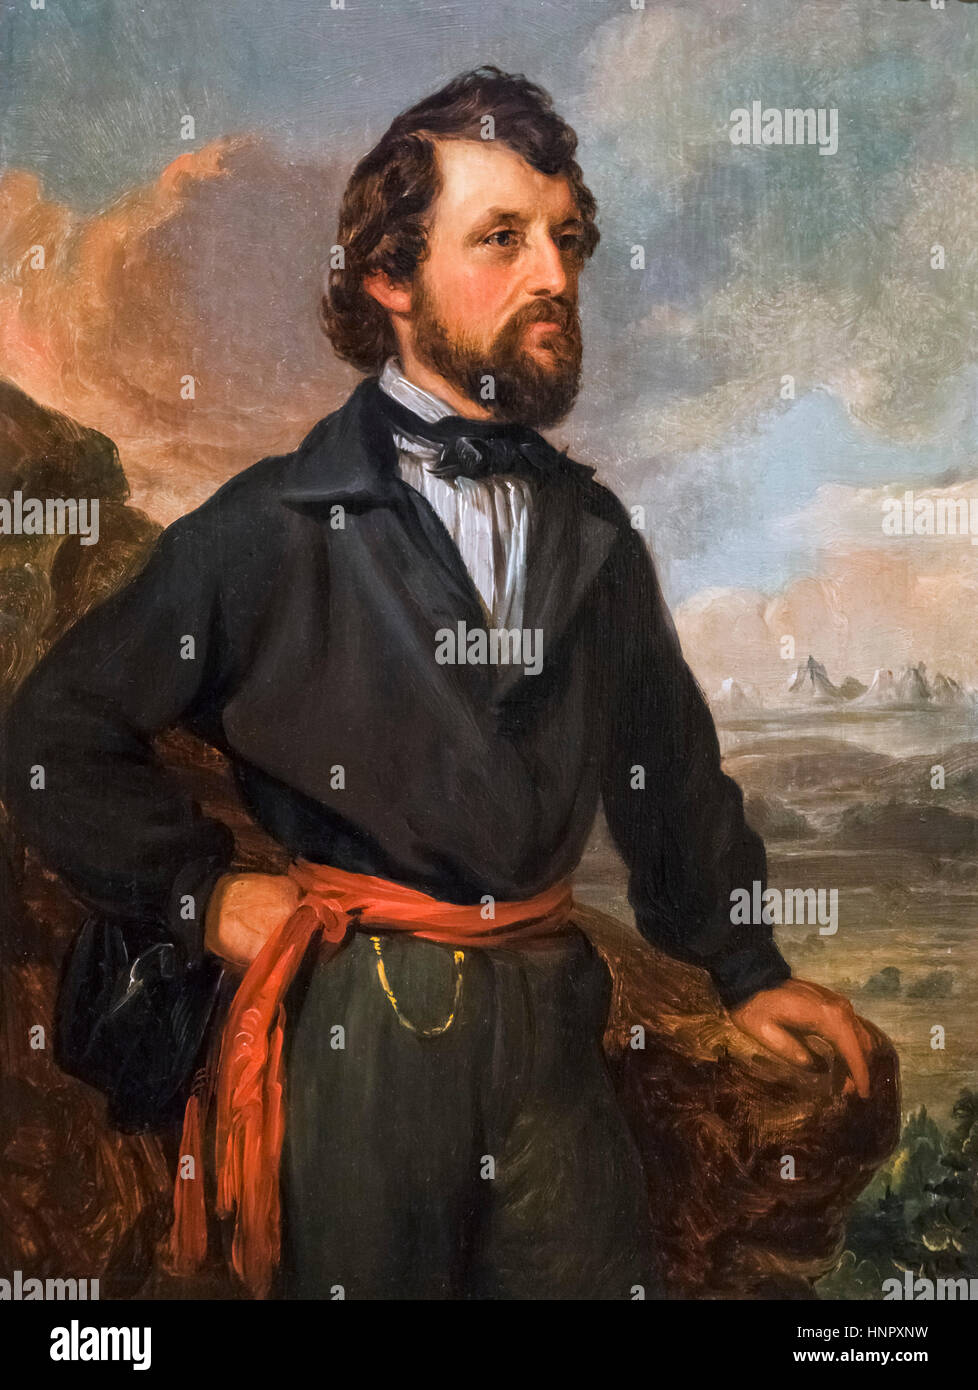 John C Frémont (1813-1890), portrait de William Smith Jewett, huile sur toile, sans date. John Charles Fremont était un officier de l'armée américaine, explorateur et homme politique. Il laisse quatre expéditions durant les années 1840, l'exploration de l'ouest des États-Unis. Banque D'Images